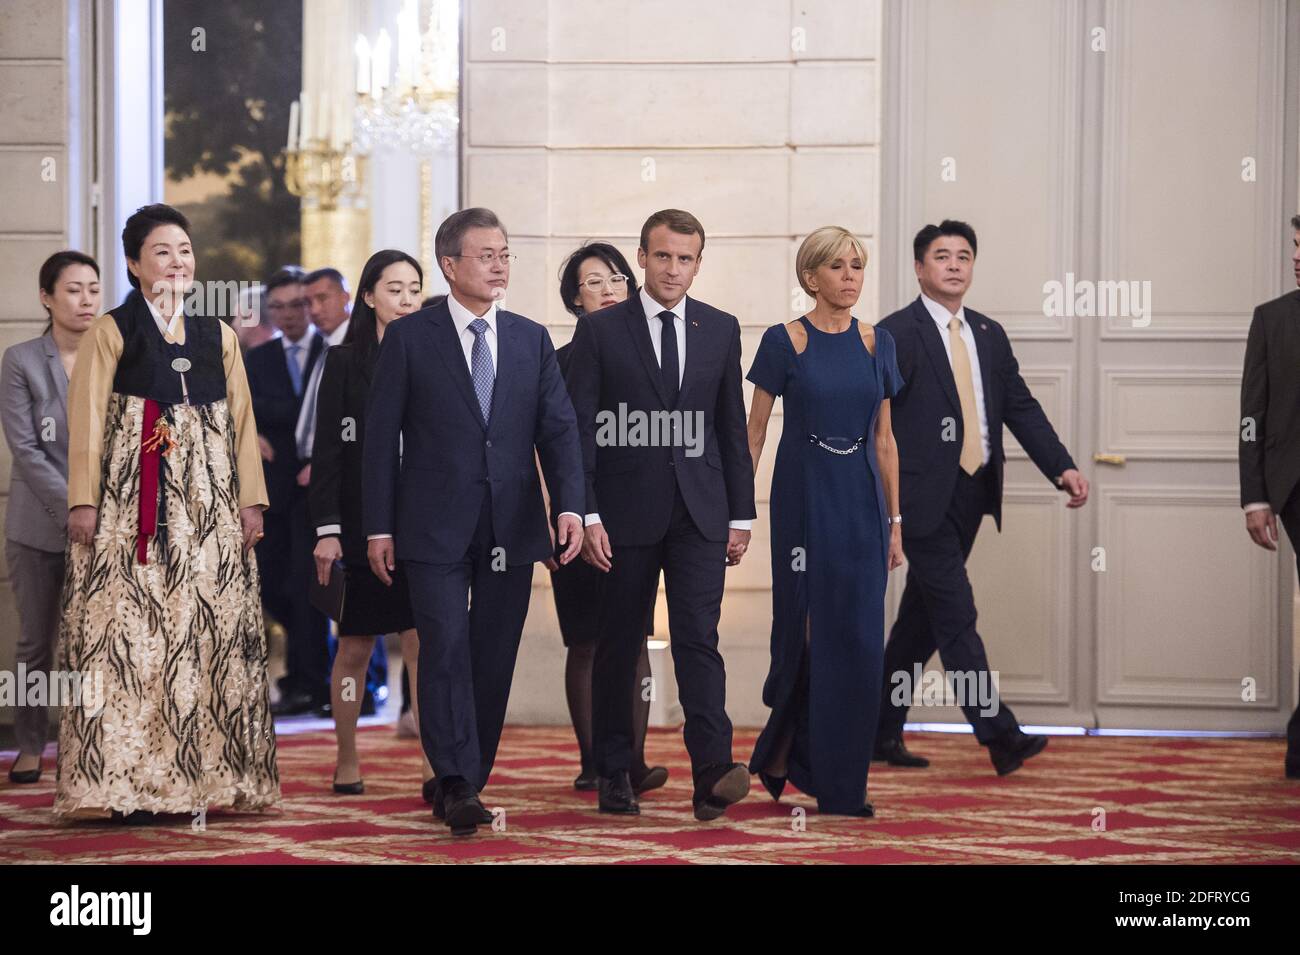 Il presidente francese Emmanuel Macron , sua moglie Brigitte Macron, il presidente sudcoreano Moon Jae-in e sua moglie Kim Jung-sook arrivano per una cena di stato al palazzo presidenziale Elysee a Parigi il 15 ottobre 2018. Foto di Eliot Blondt/ABACAPRESS.COM Foto Stock